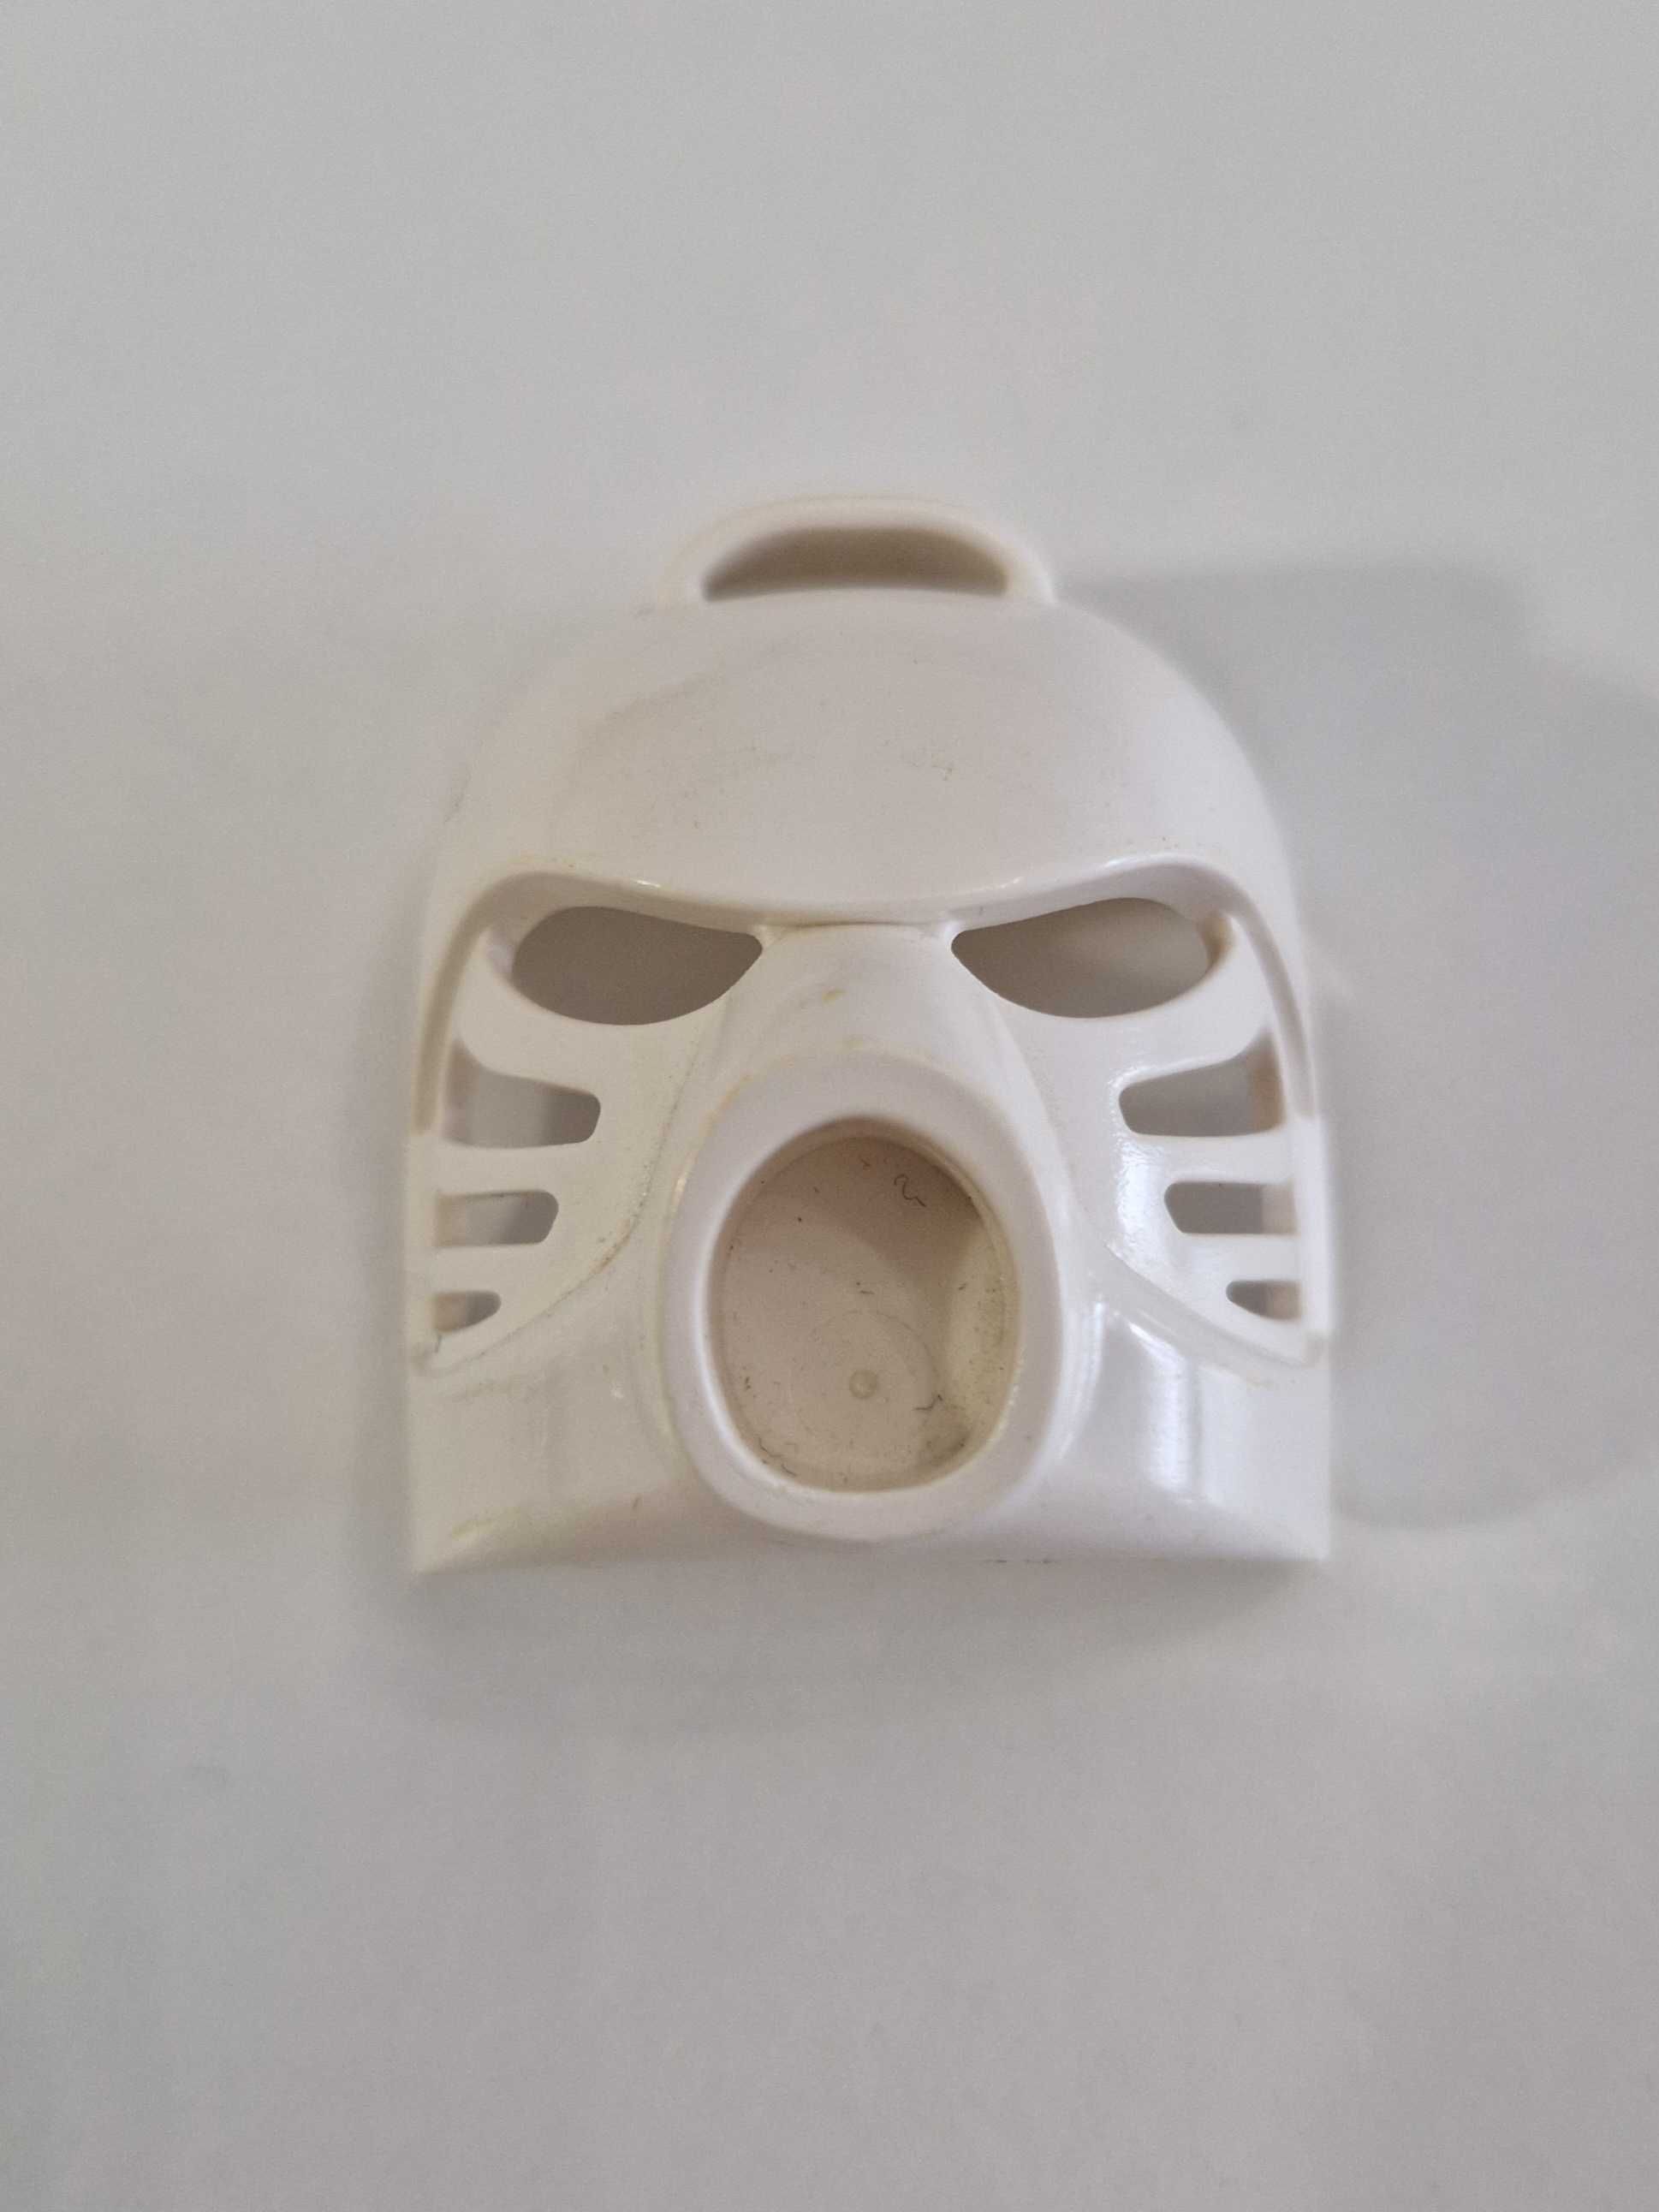 32505 - Lego Bionicle Mask Hau TAHU White